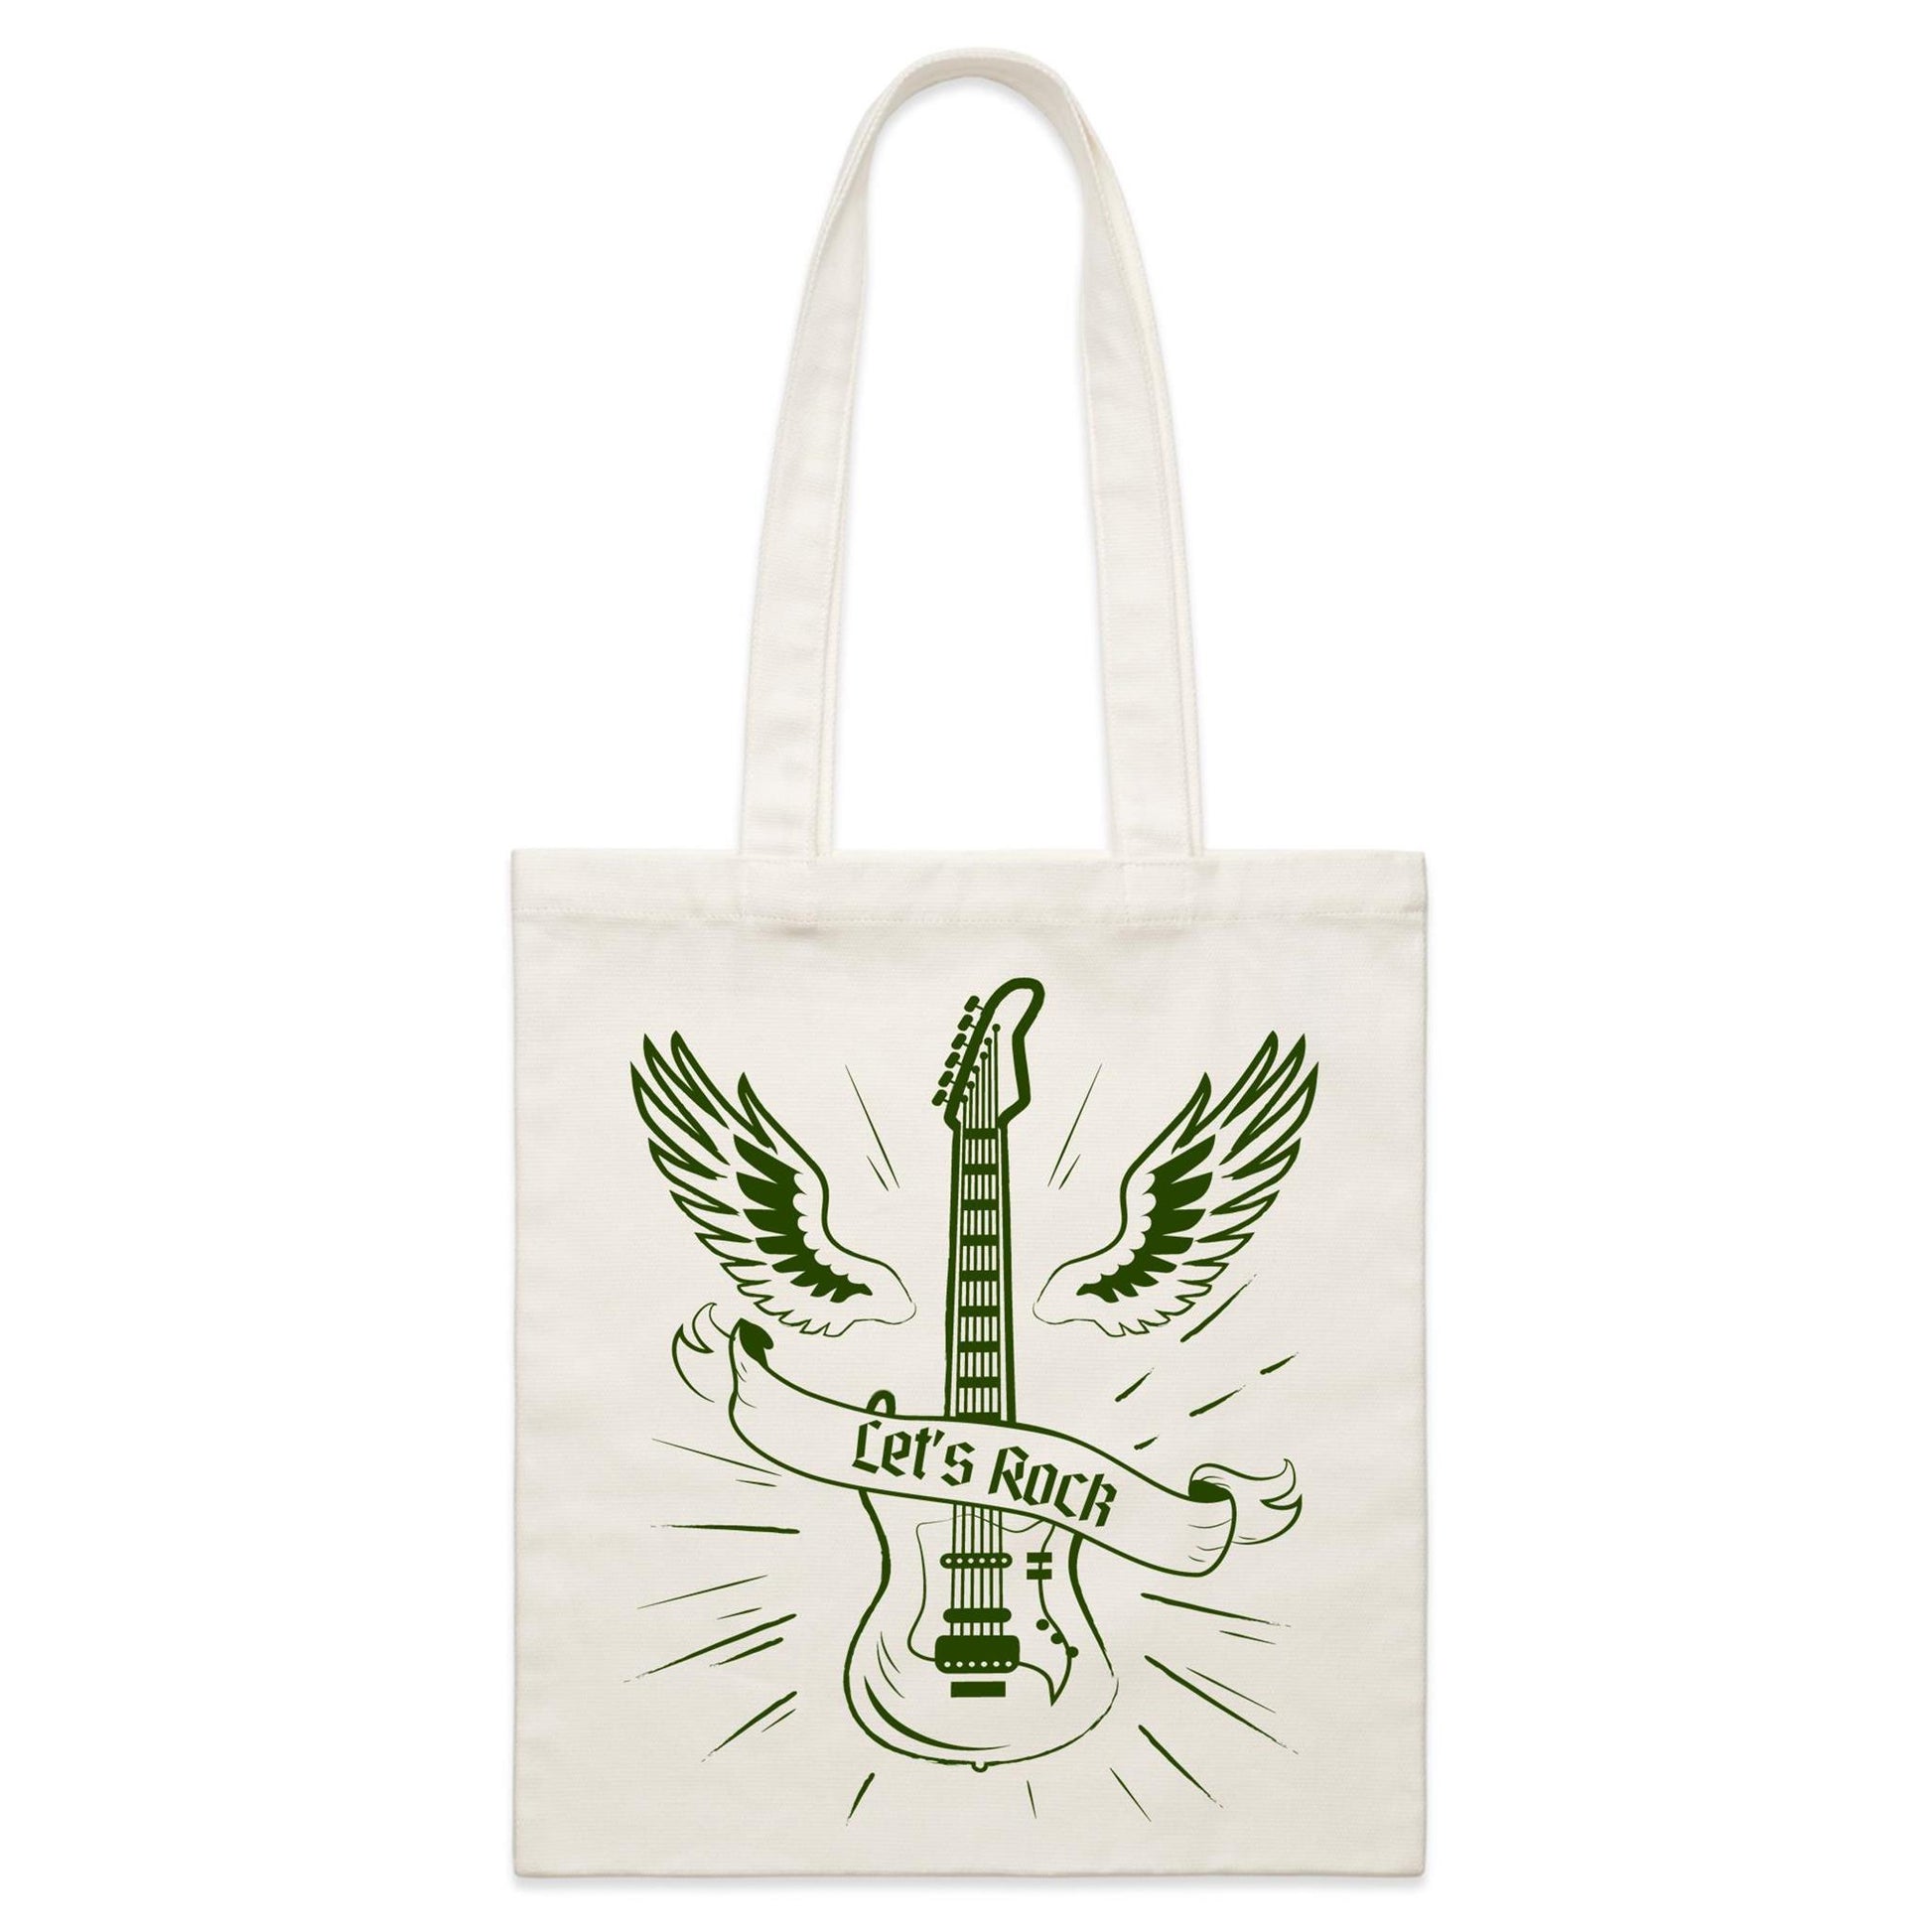 Let's Rock - Parcel Canvas Tote Bag Default Title Parcel Tote Bag Music